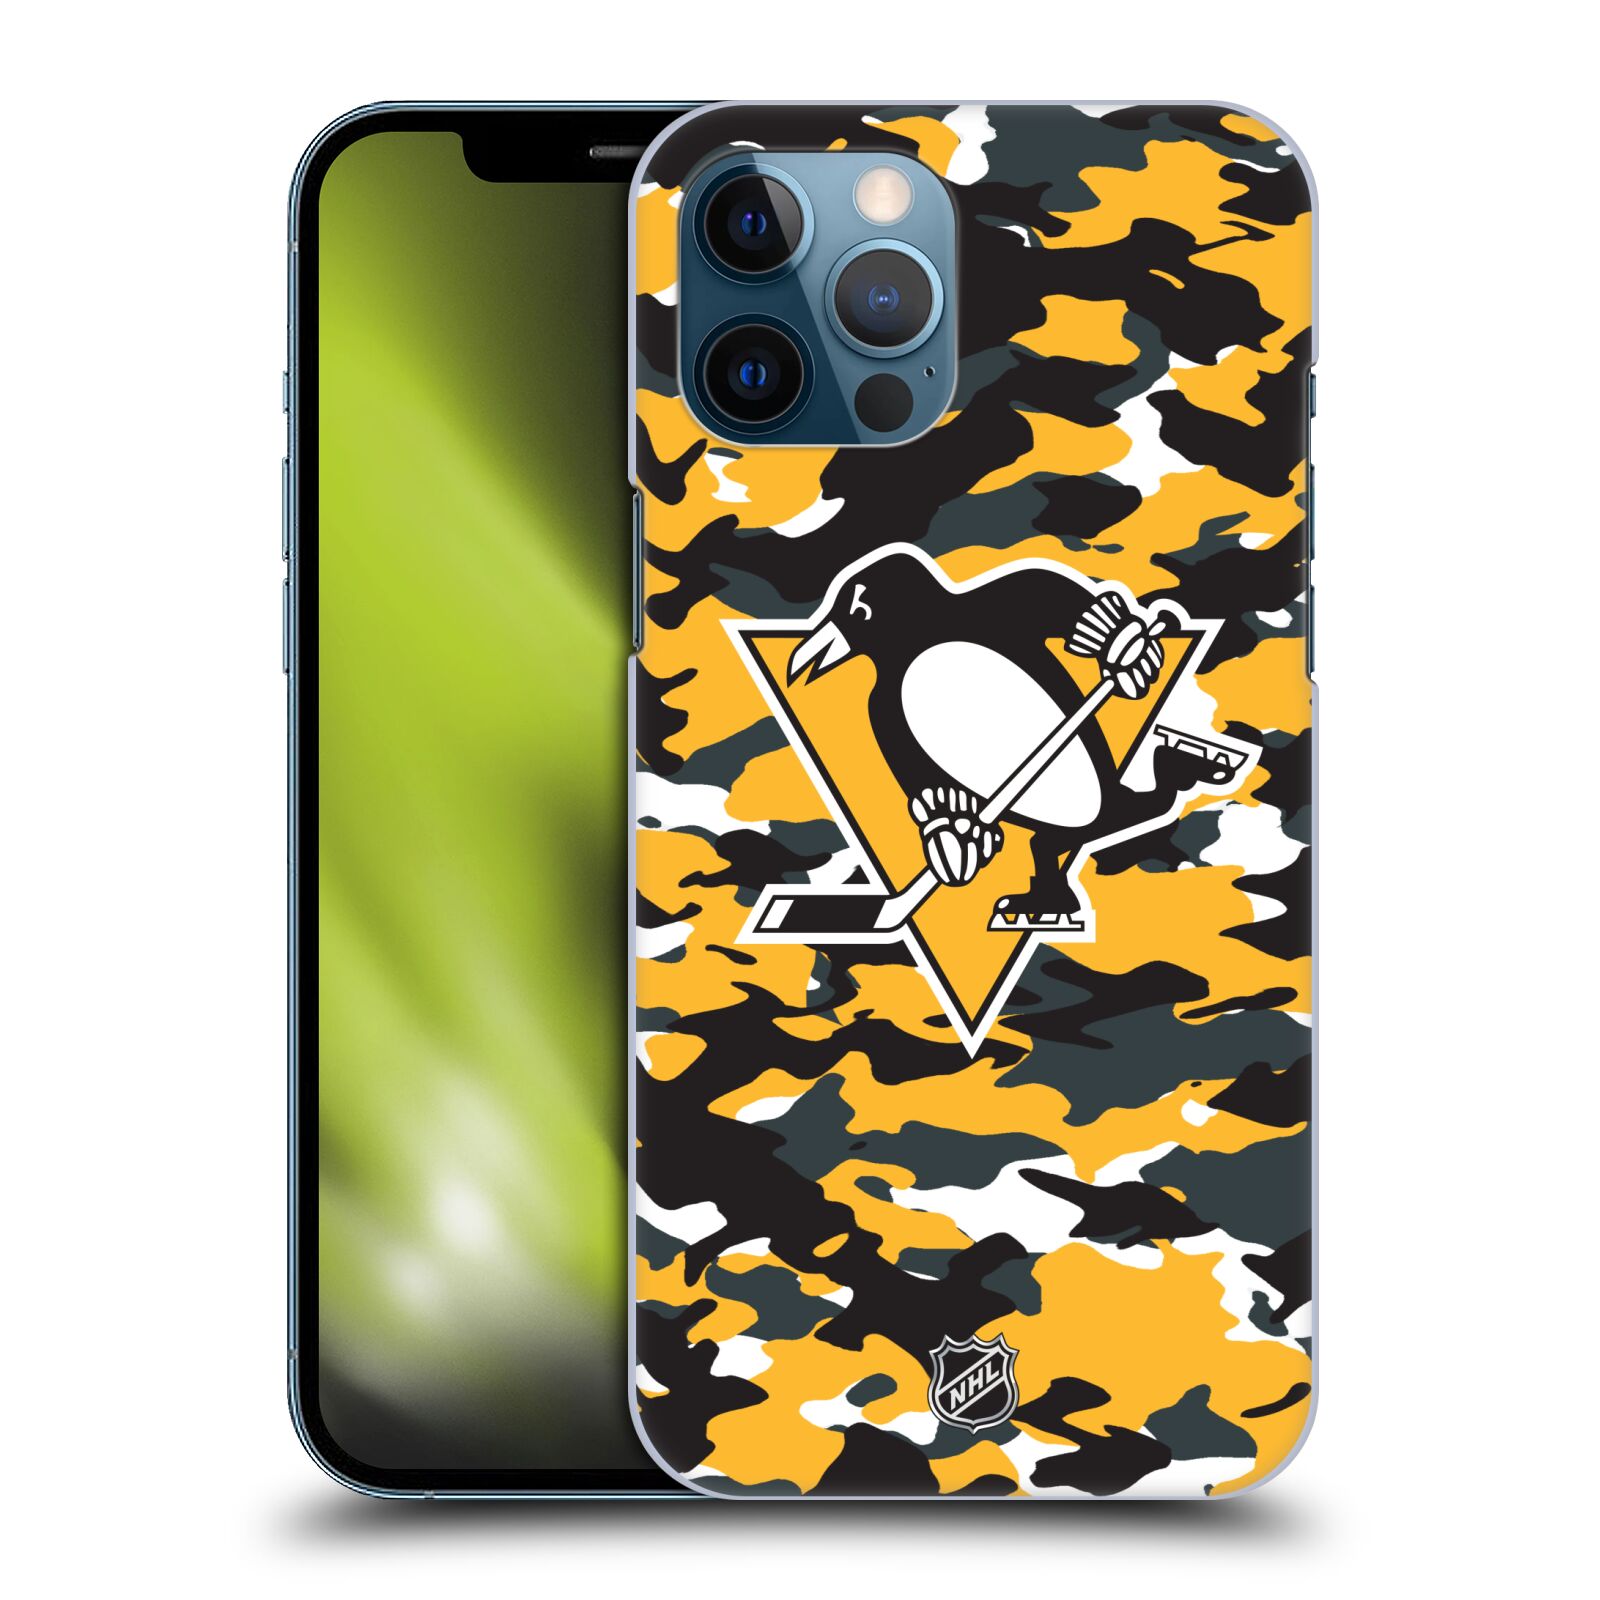 Pouzdro na mobil Apple Iphone 12 PRO MAX - HEAD CASE - Hokej NHL - Pittsburgh Penguins - kamufláž znak